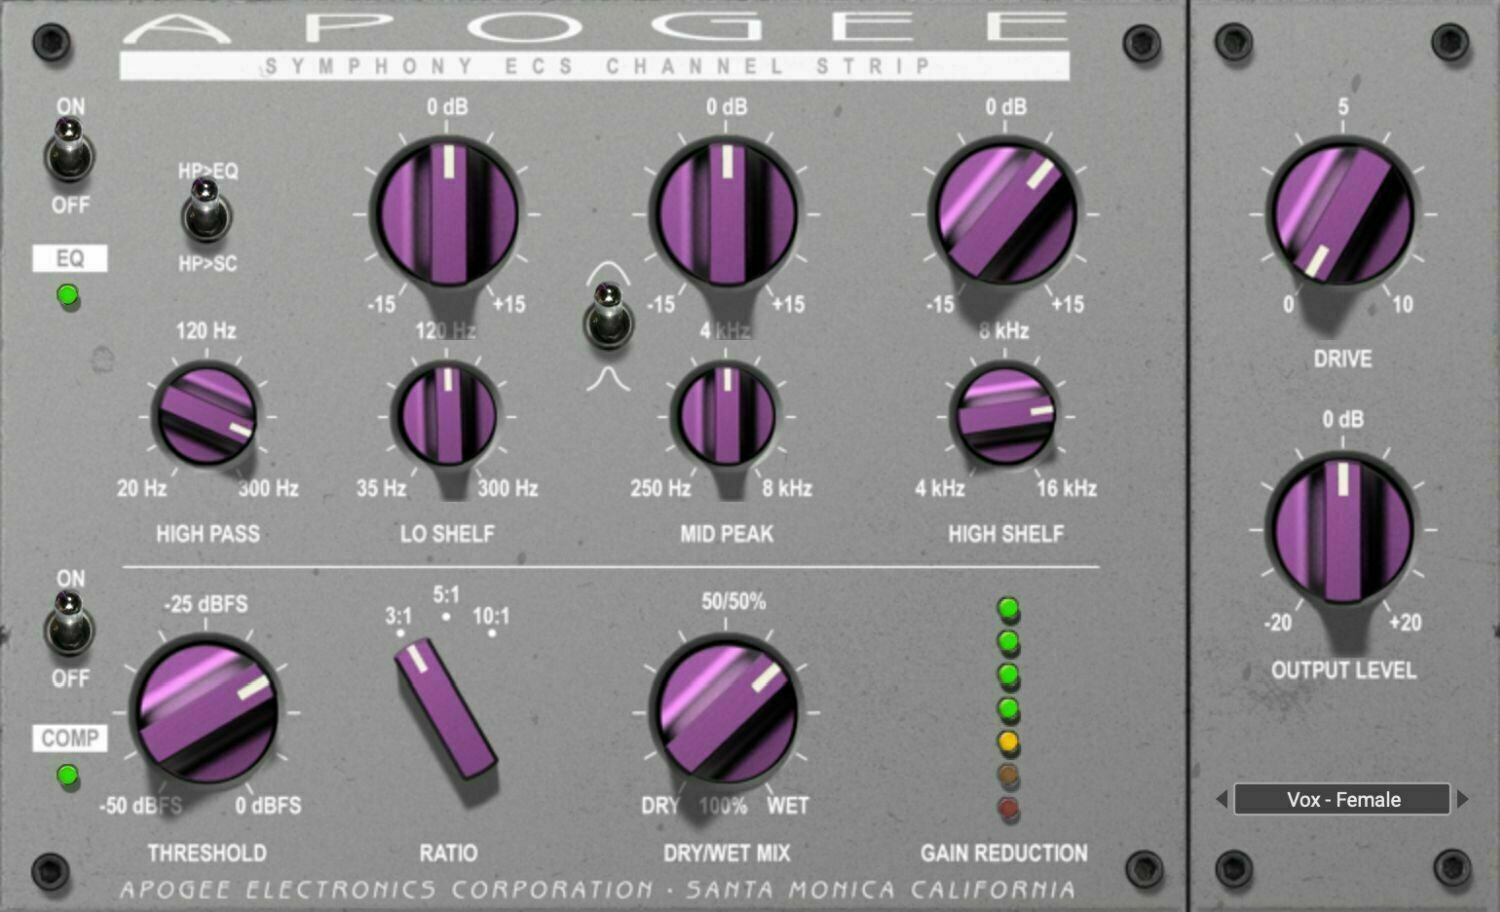 Plug-in de efeitos Apogee FX Rack Symphony ECS Channel Strip (Produto digital)